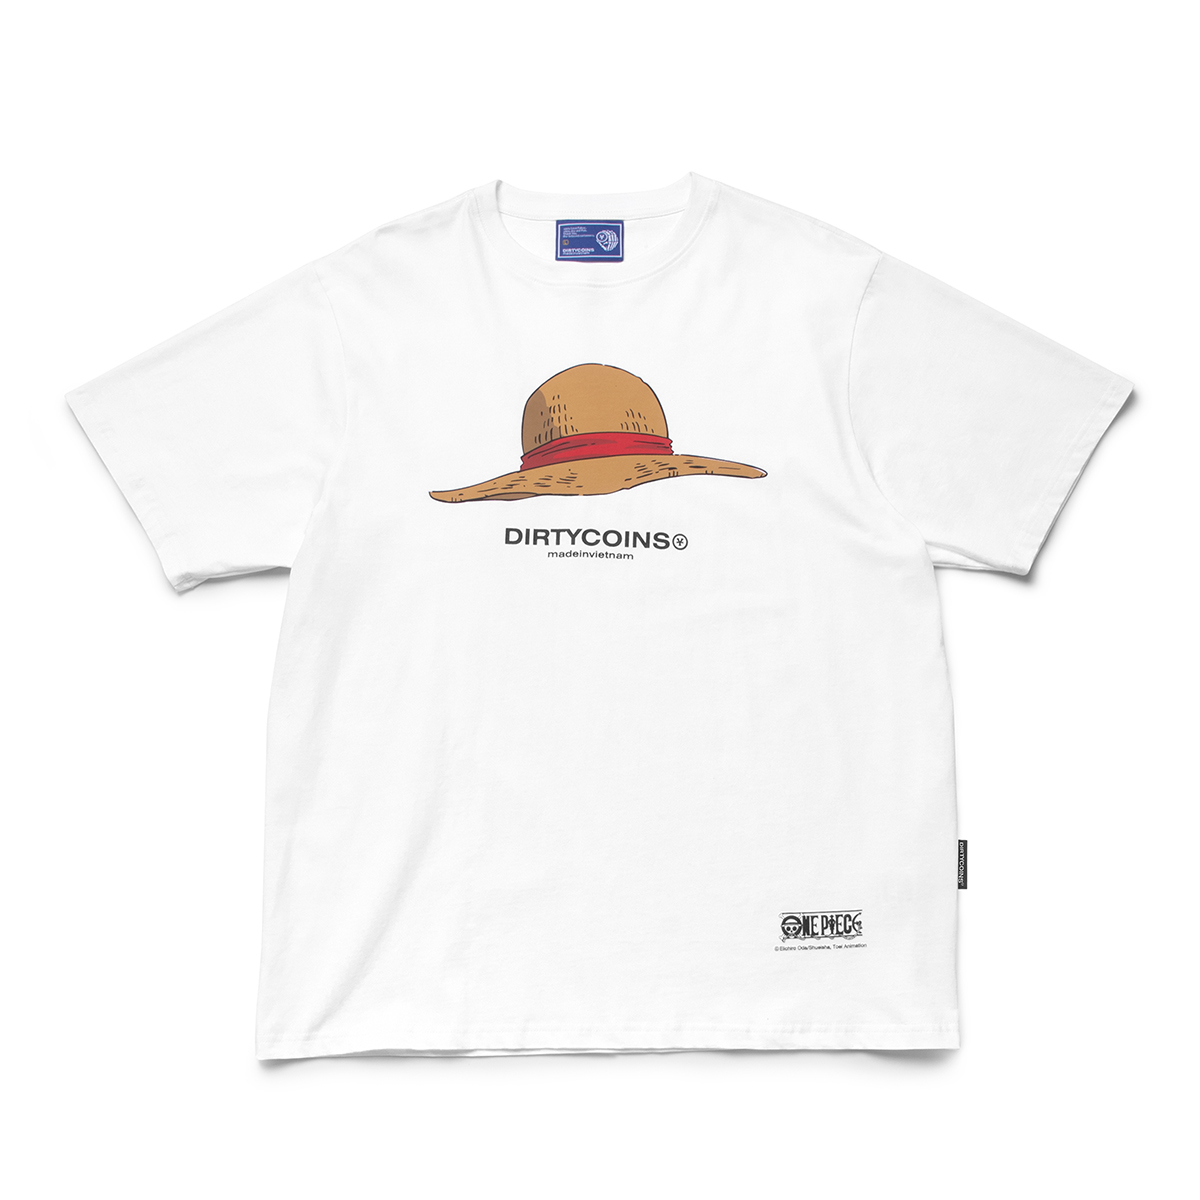 Áo thun DirtyCoins x One Piece Straw Hat T-shirt - White